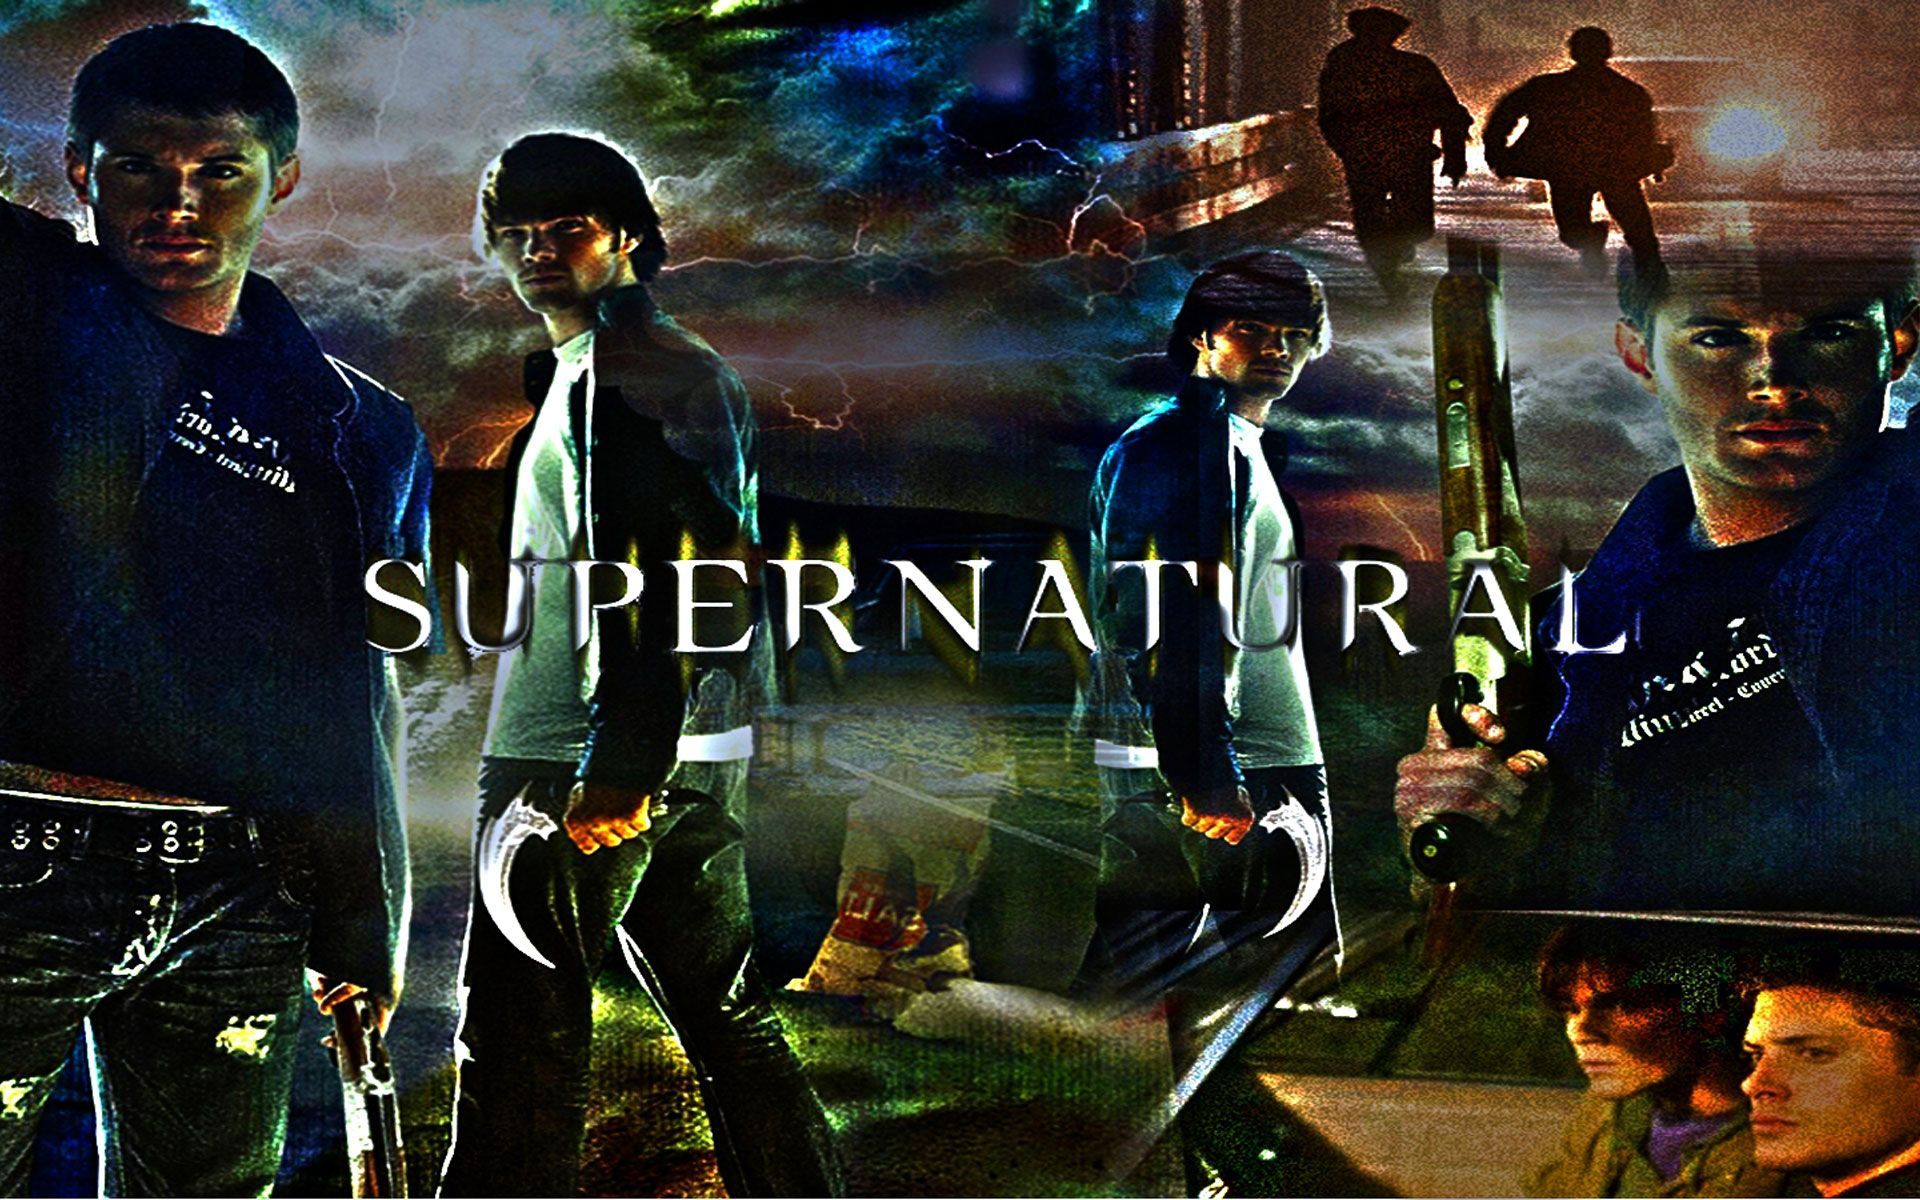 Supernatural TV Show Wallpaper | iWallpaper.Top - Good HD ...